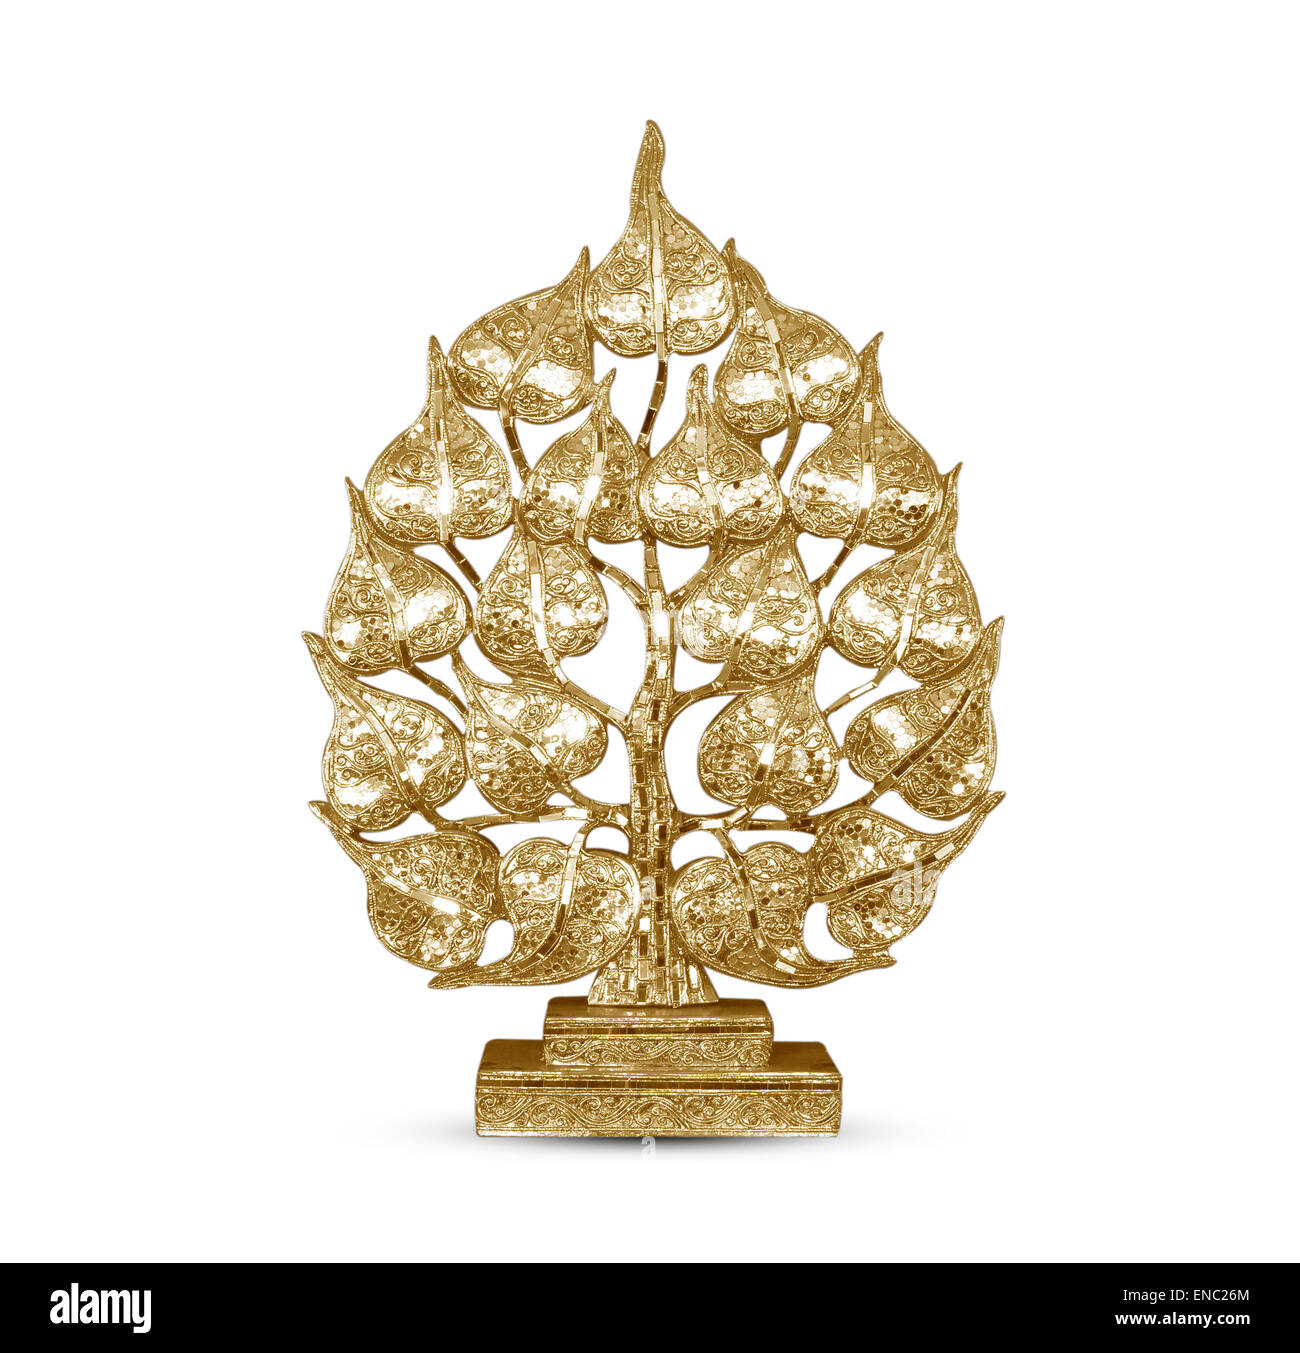 Buddhistischen Skulptur golden Baum hergestellt aus Stuck. Stockfoto